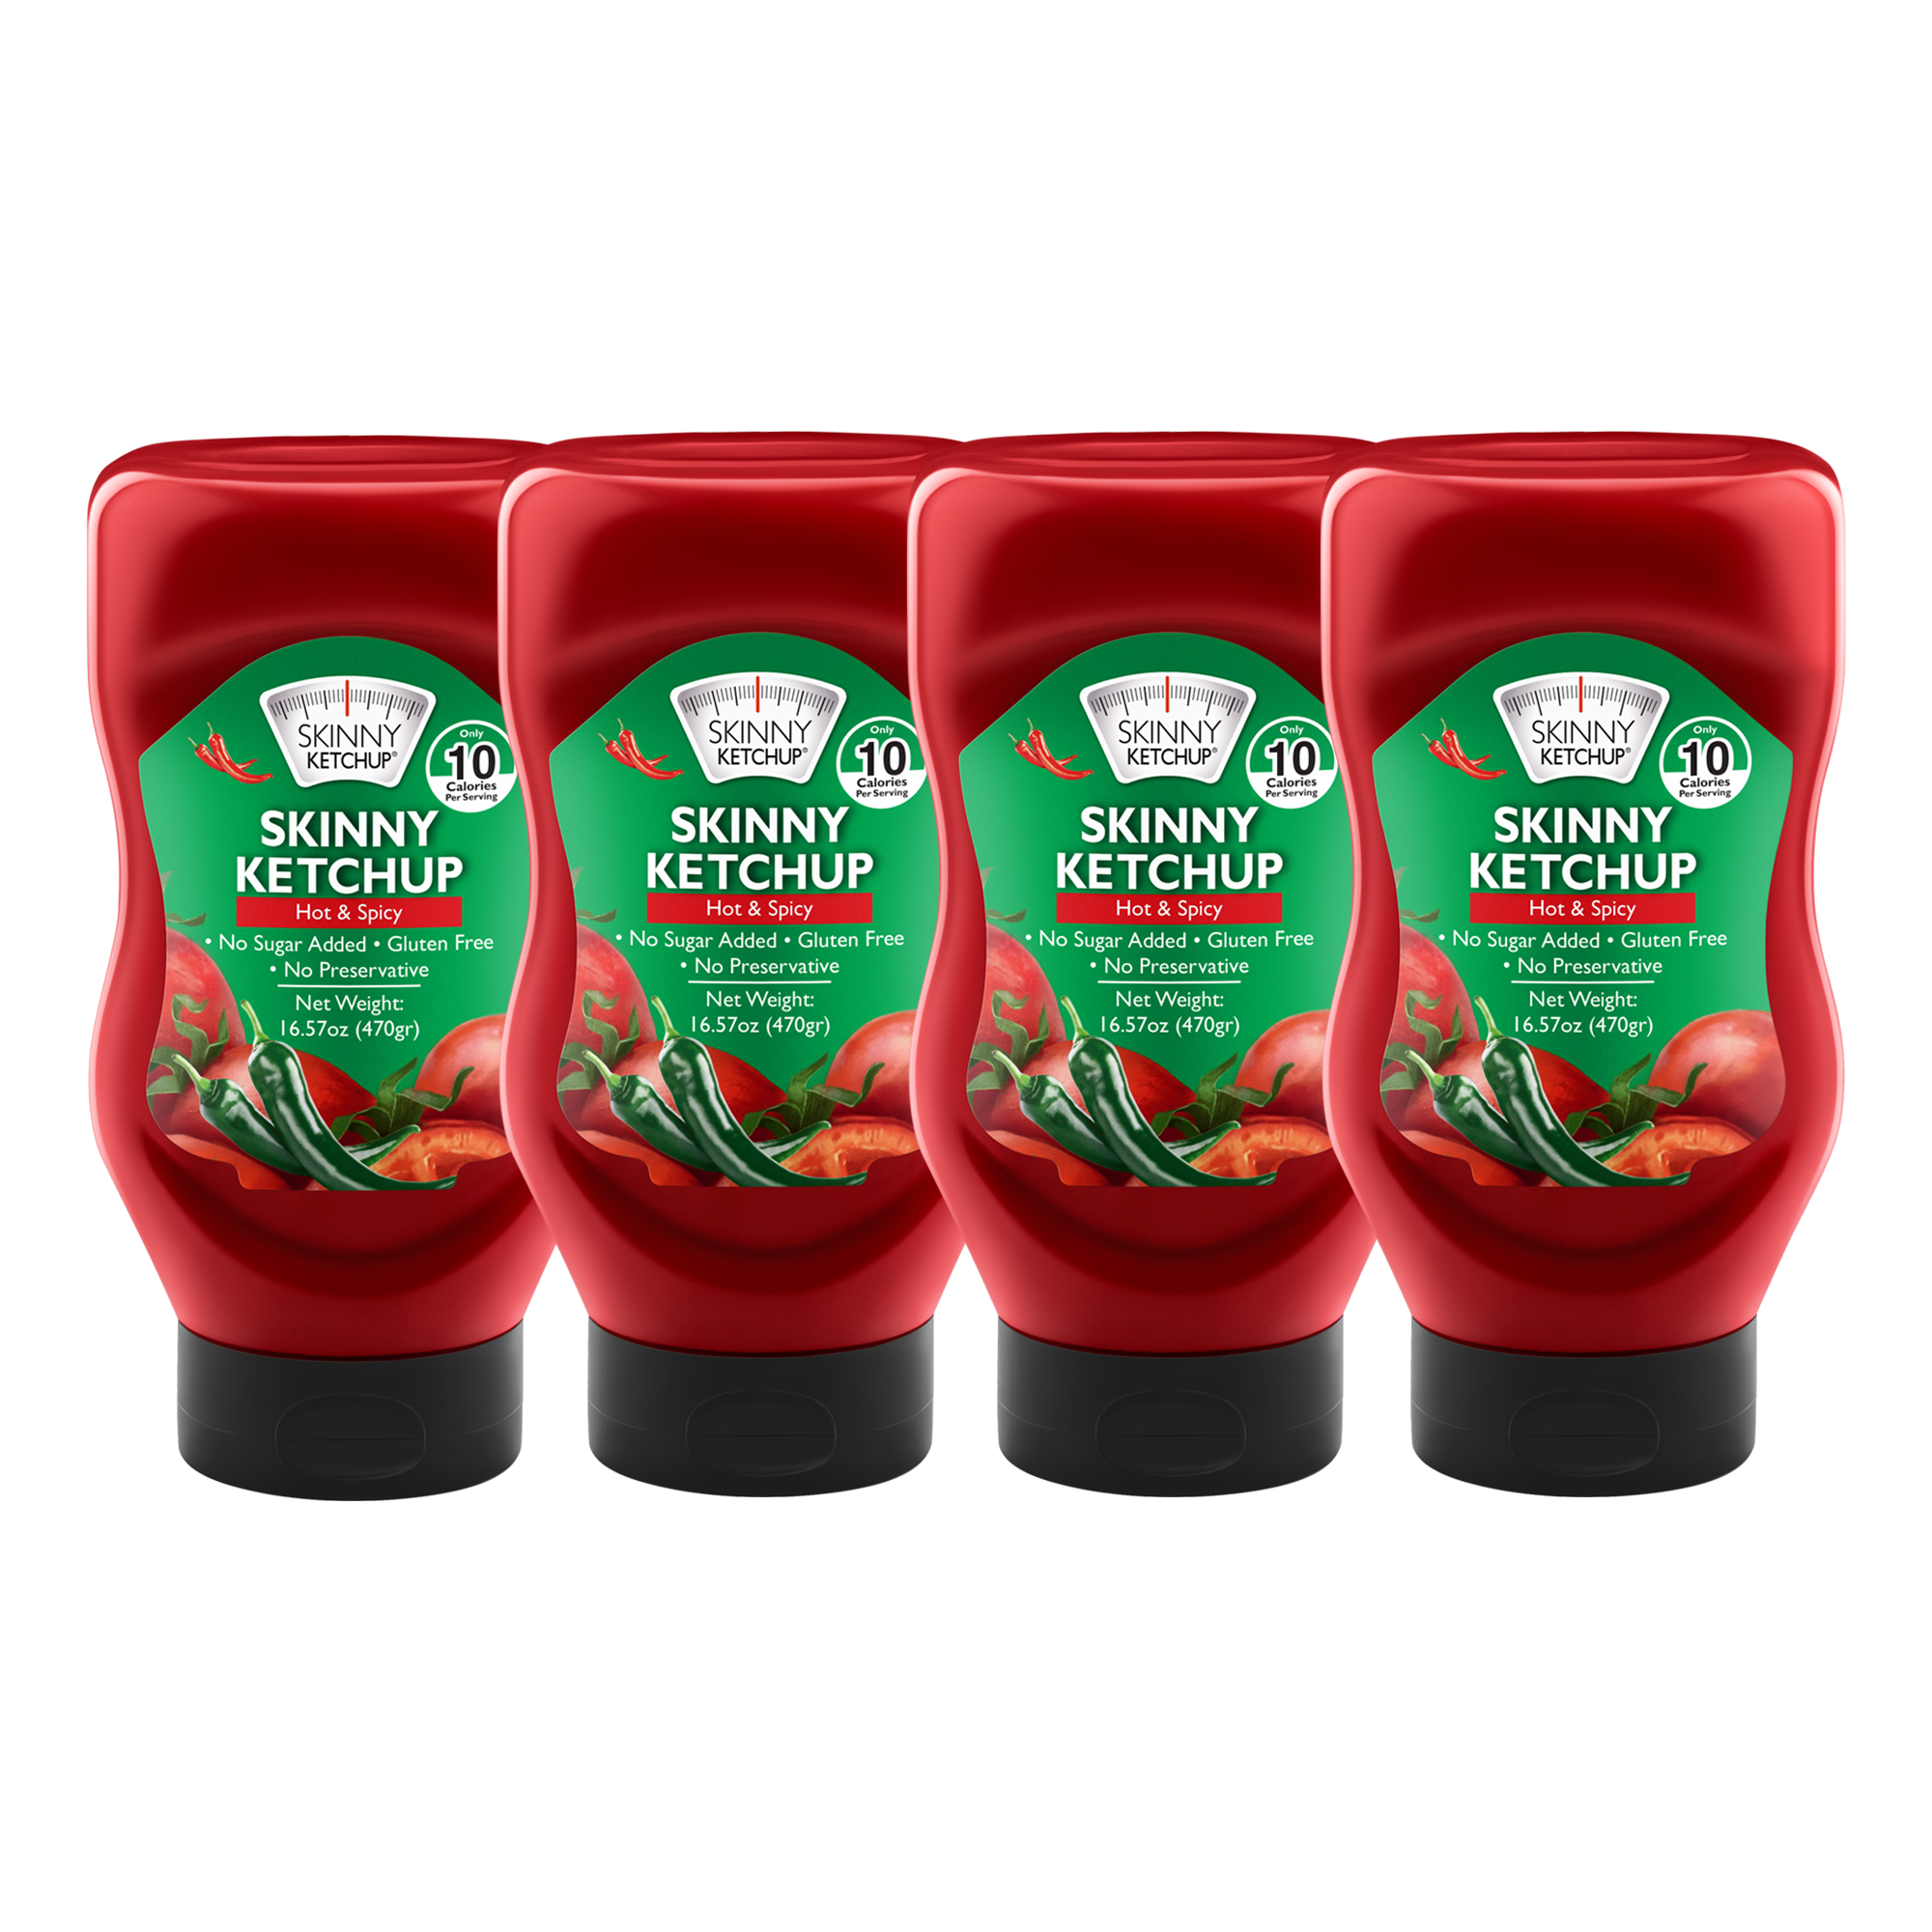 Spicy Skinny Ketchup 4 Pack - Sugar Free, Vegan Friendly